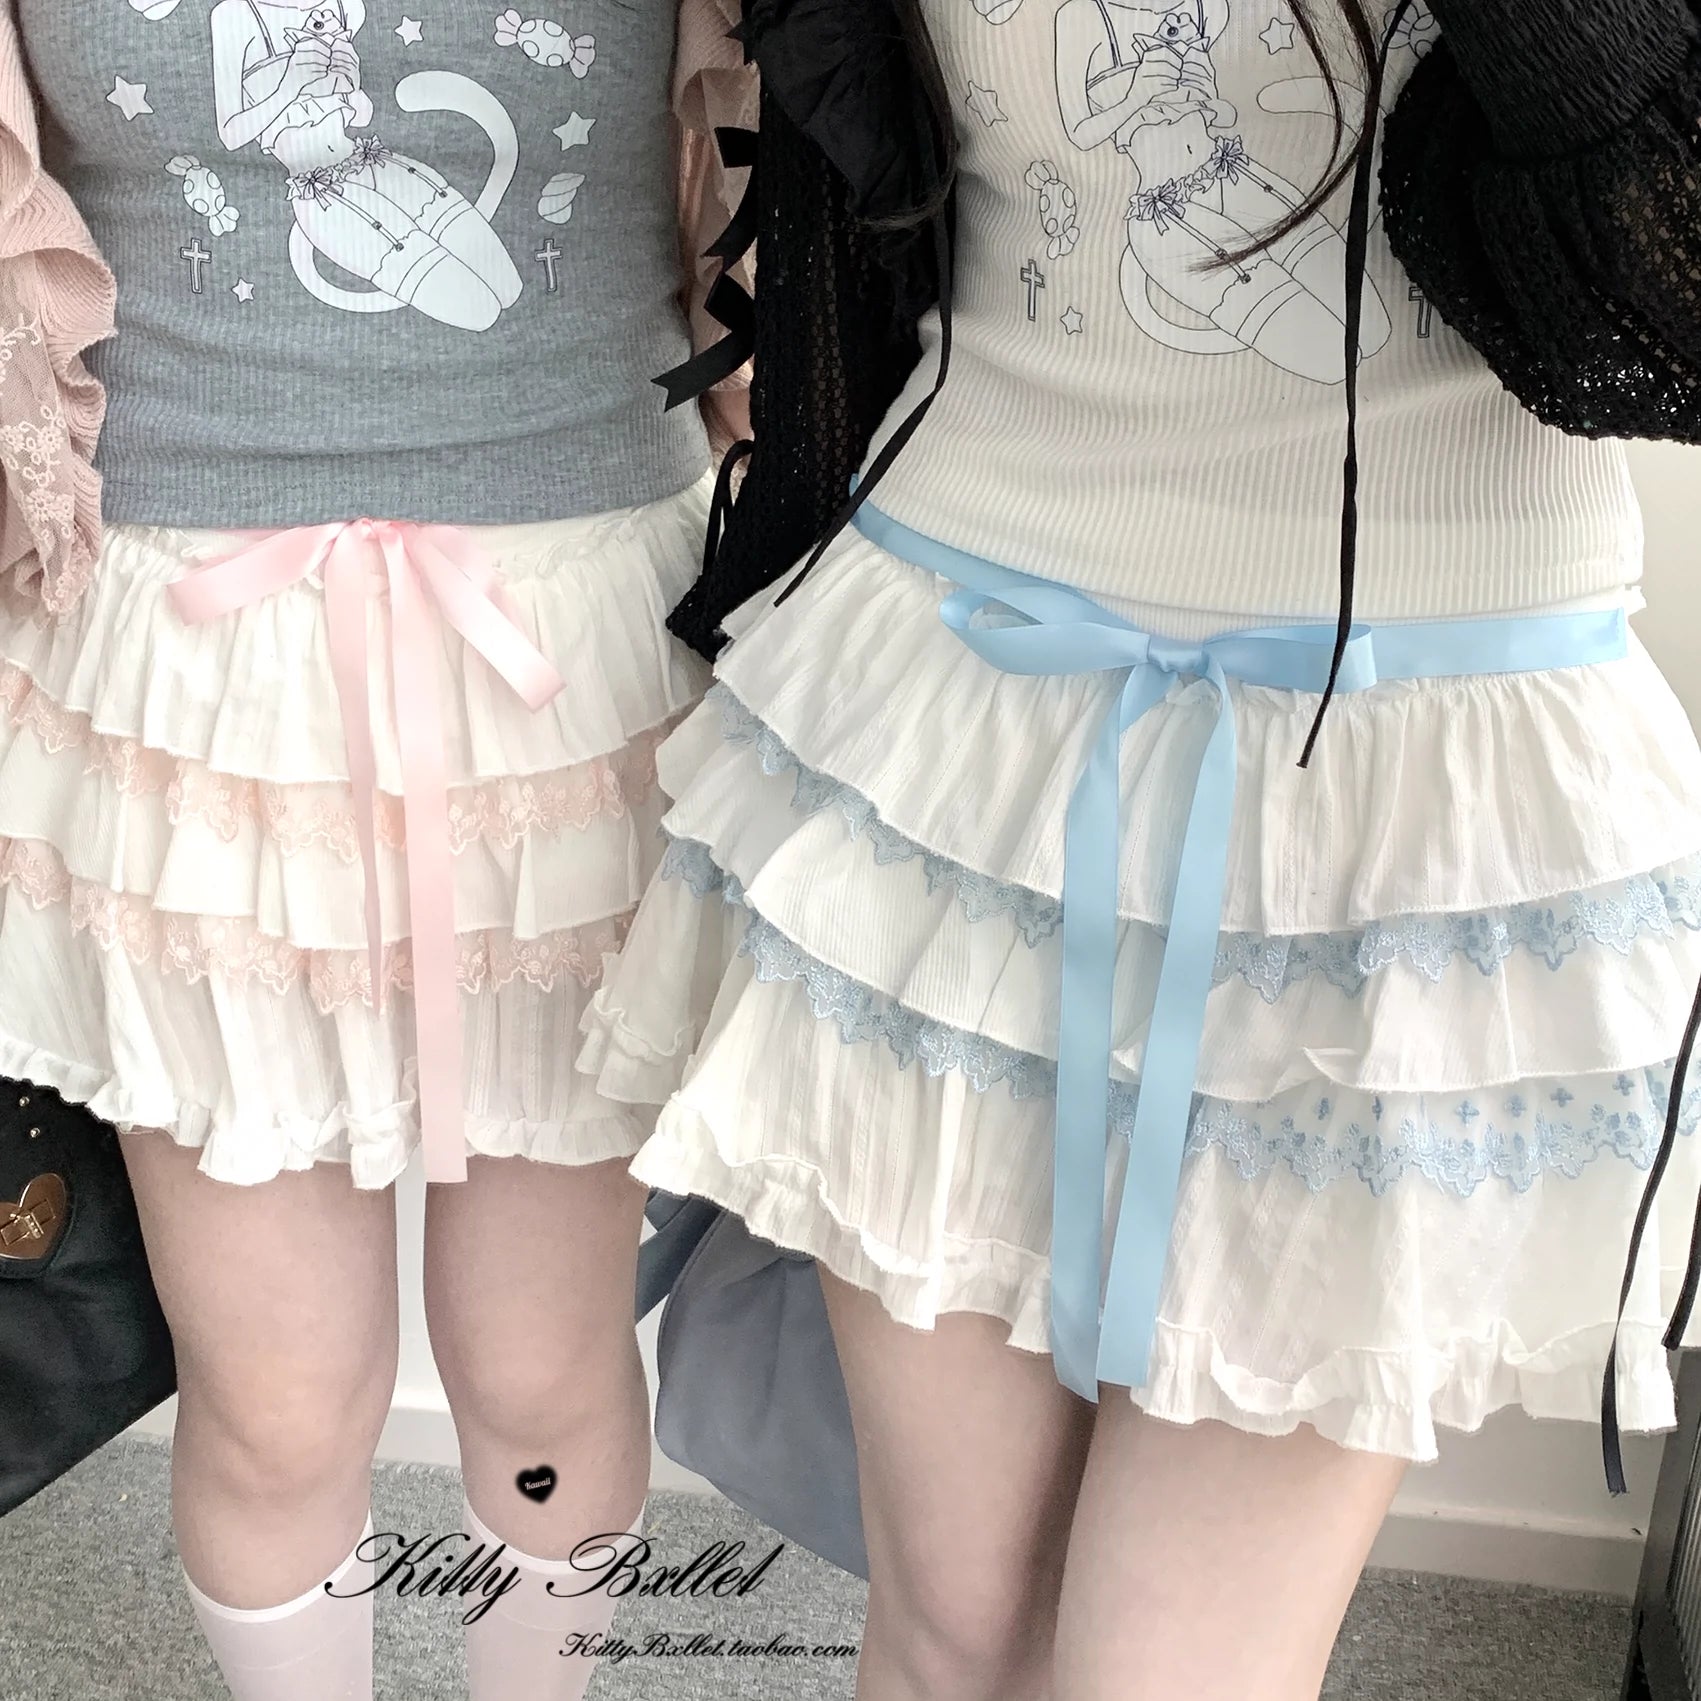 Ryousangata Skirt Lace Cake Skirt And Apron Set 36790:536206